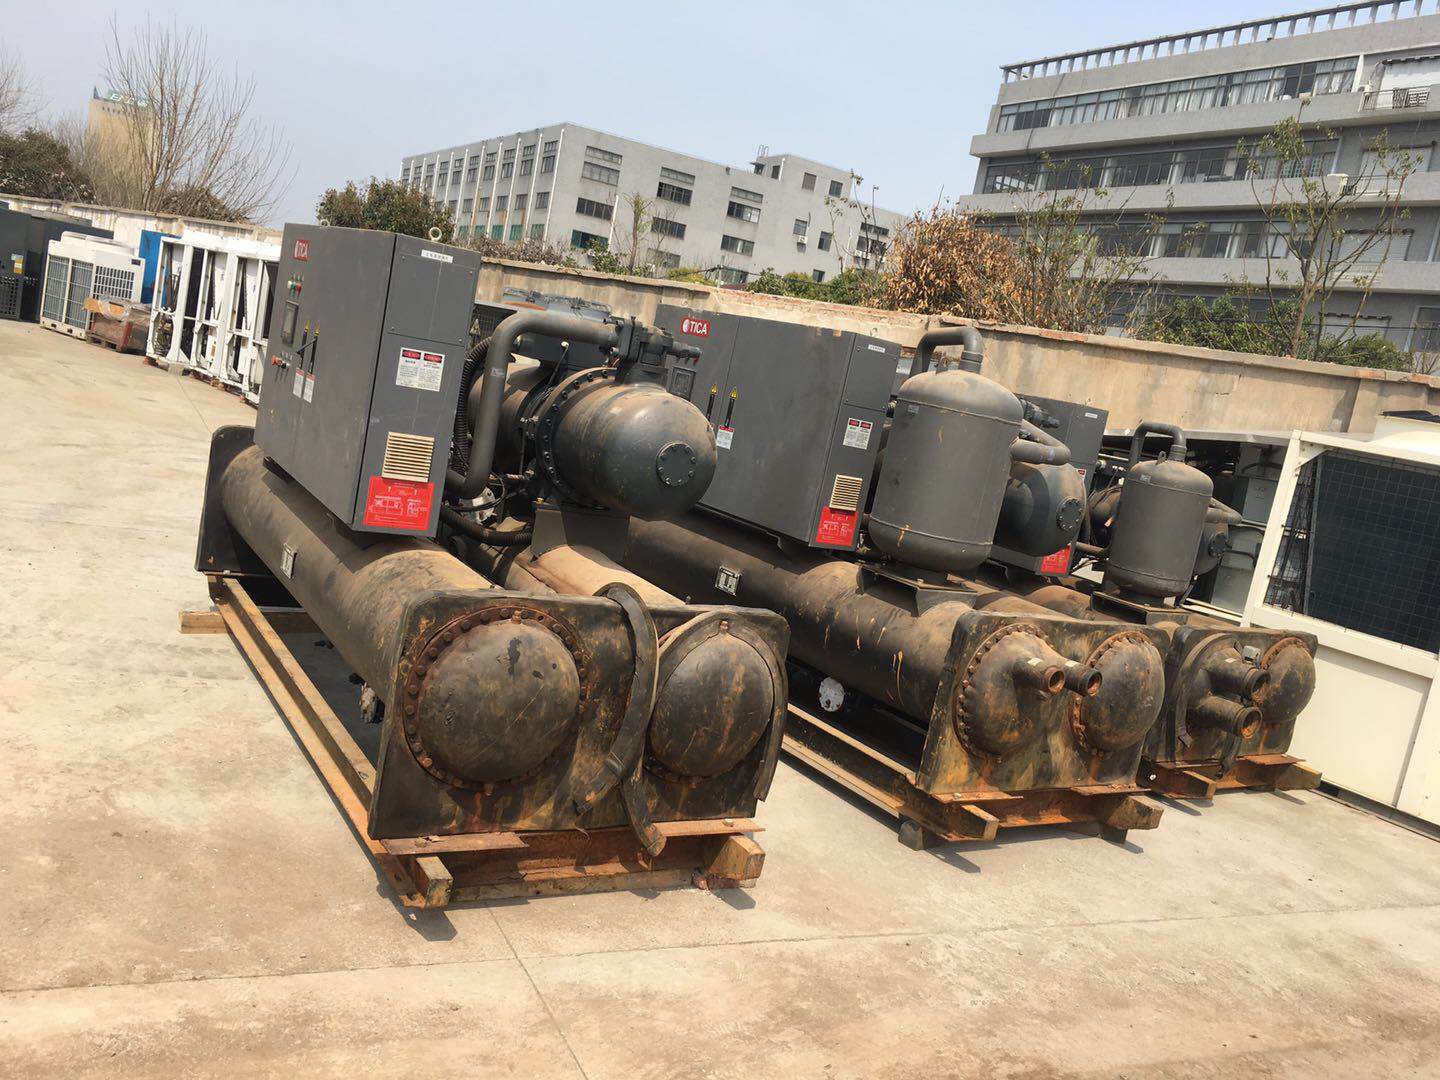 深圳龙岗区二手空调回收/风冷式冷水机组回收/拆除方案